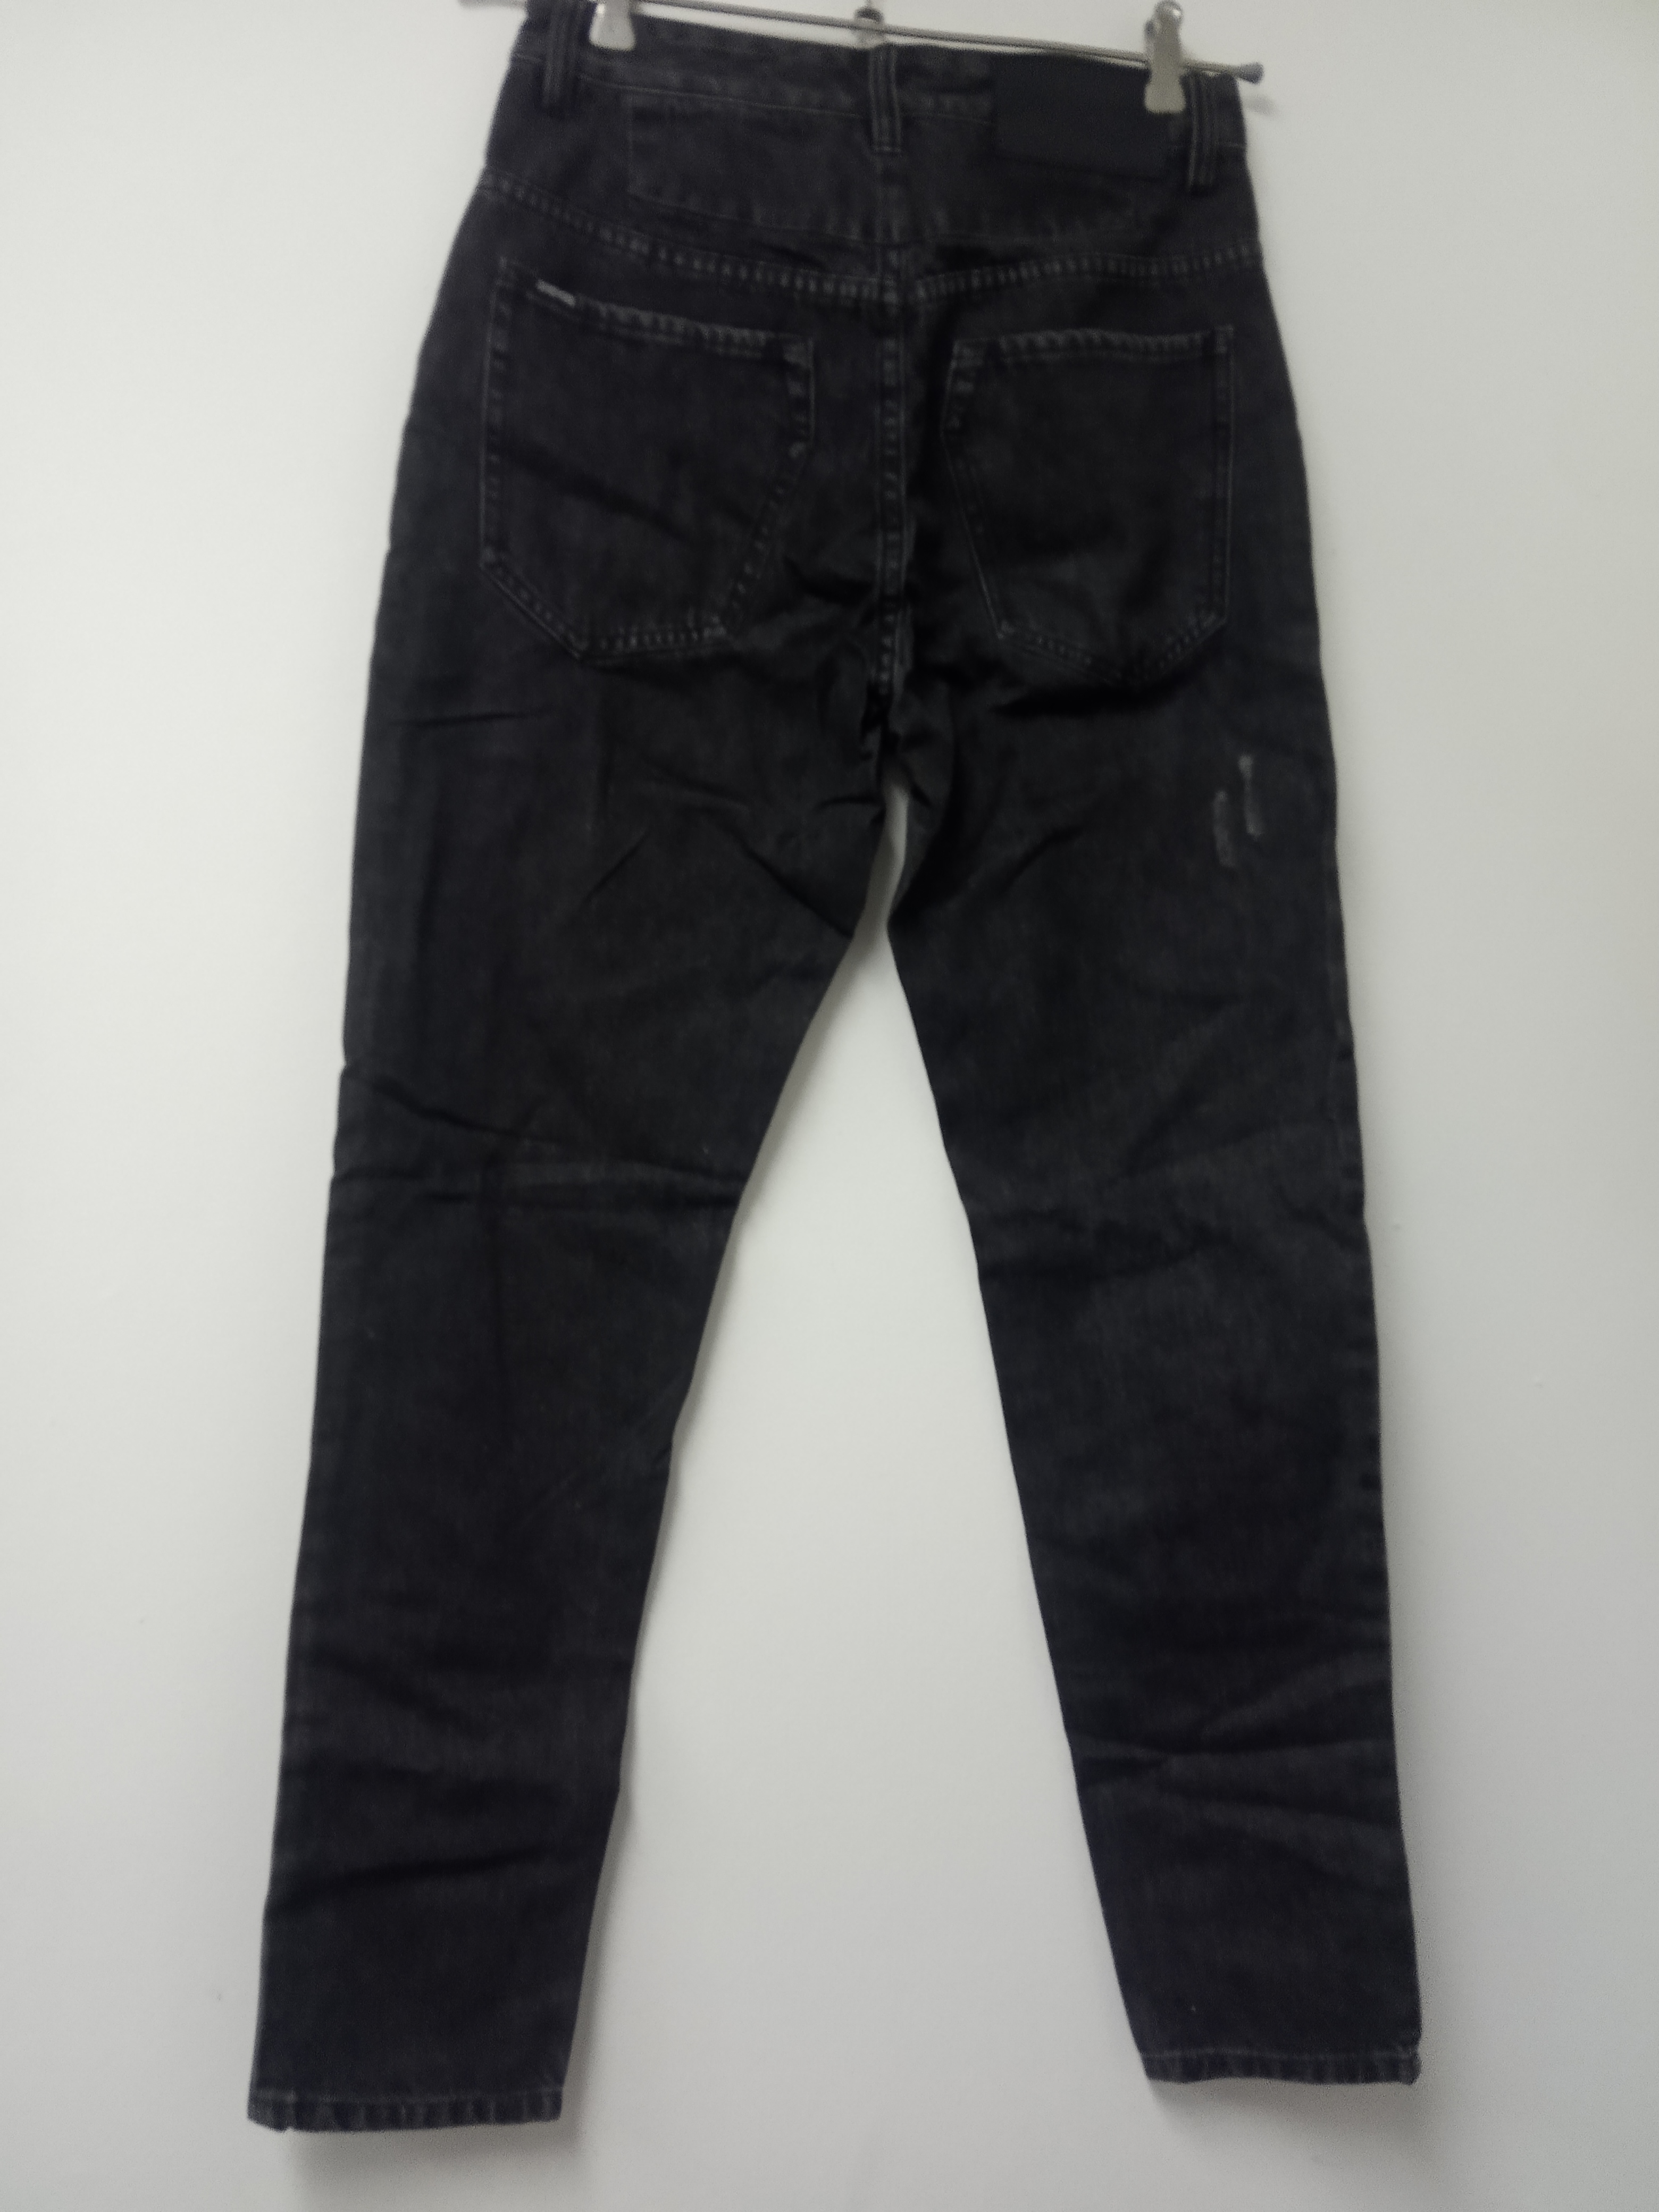 תמונה 4 ,ג'ינס zanrobe מידה 29 למכירה בתל אביב  ביגוד ואביזרים  ג'ינסים ומכנסיים